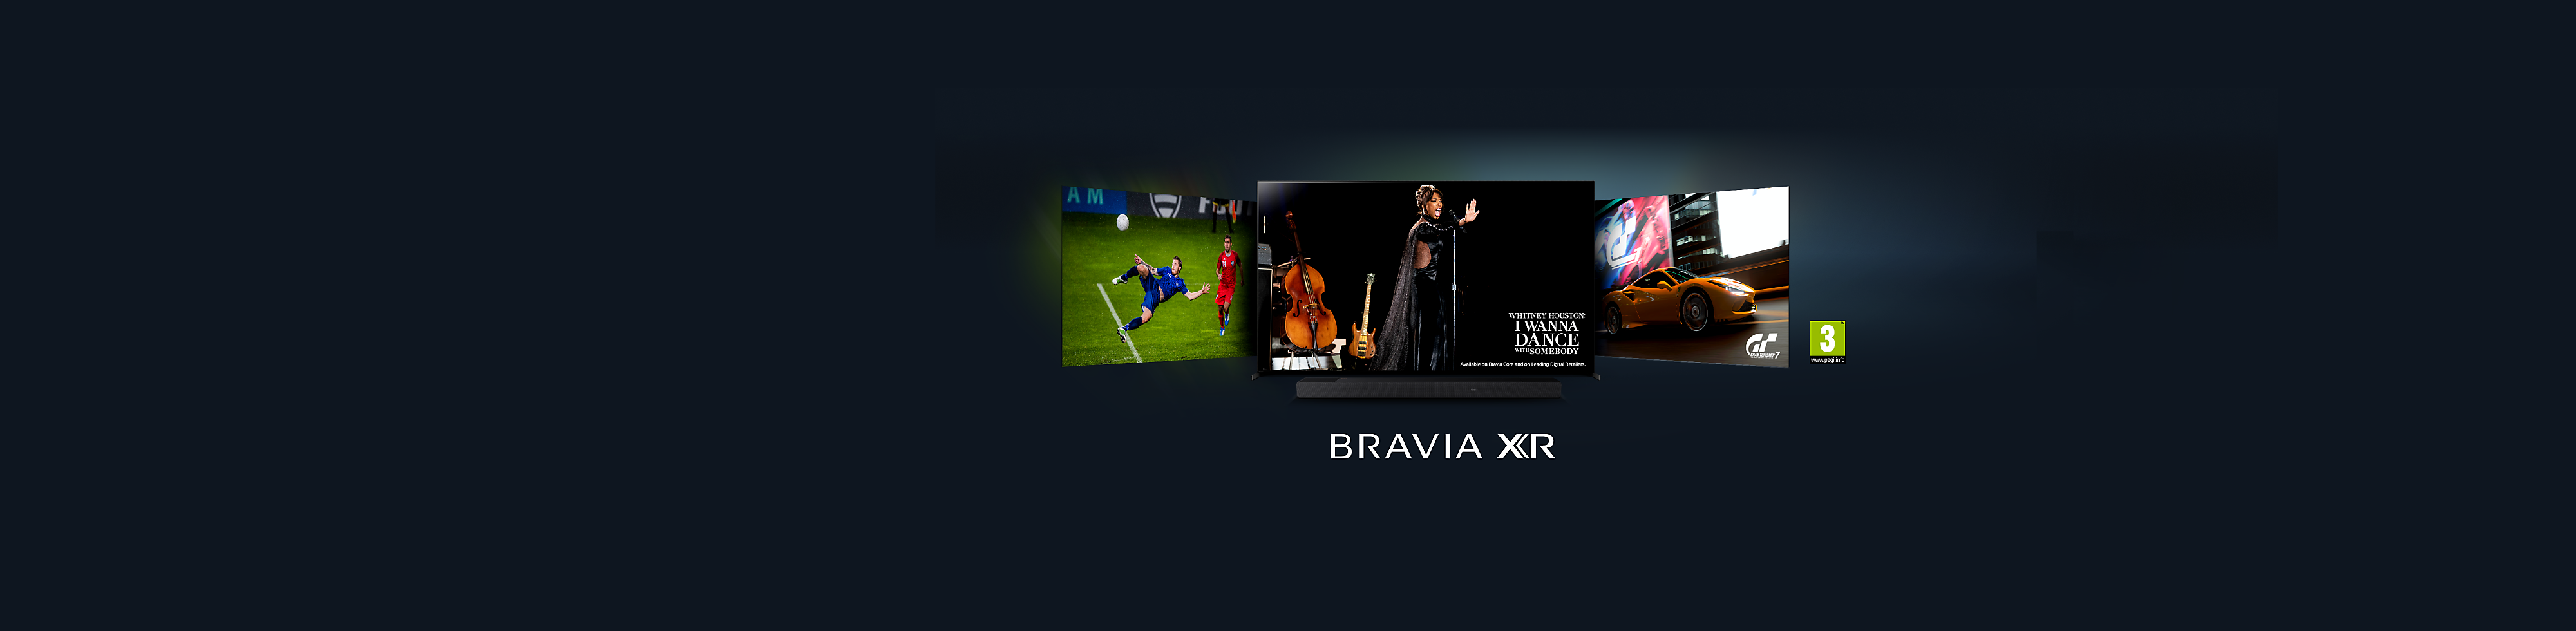 Objevte novou řadu televizorů BRAVIA XR